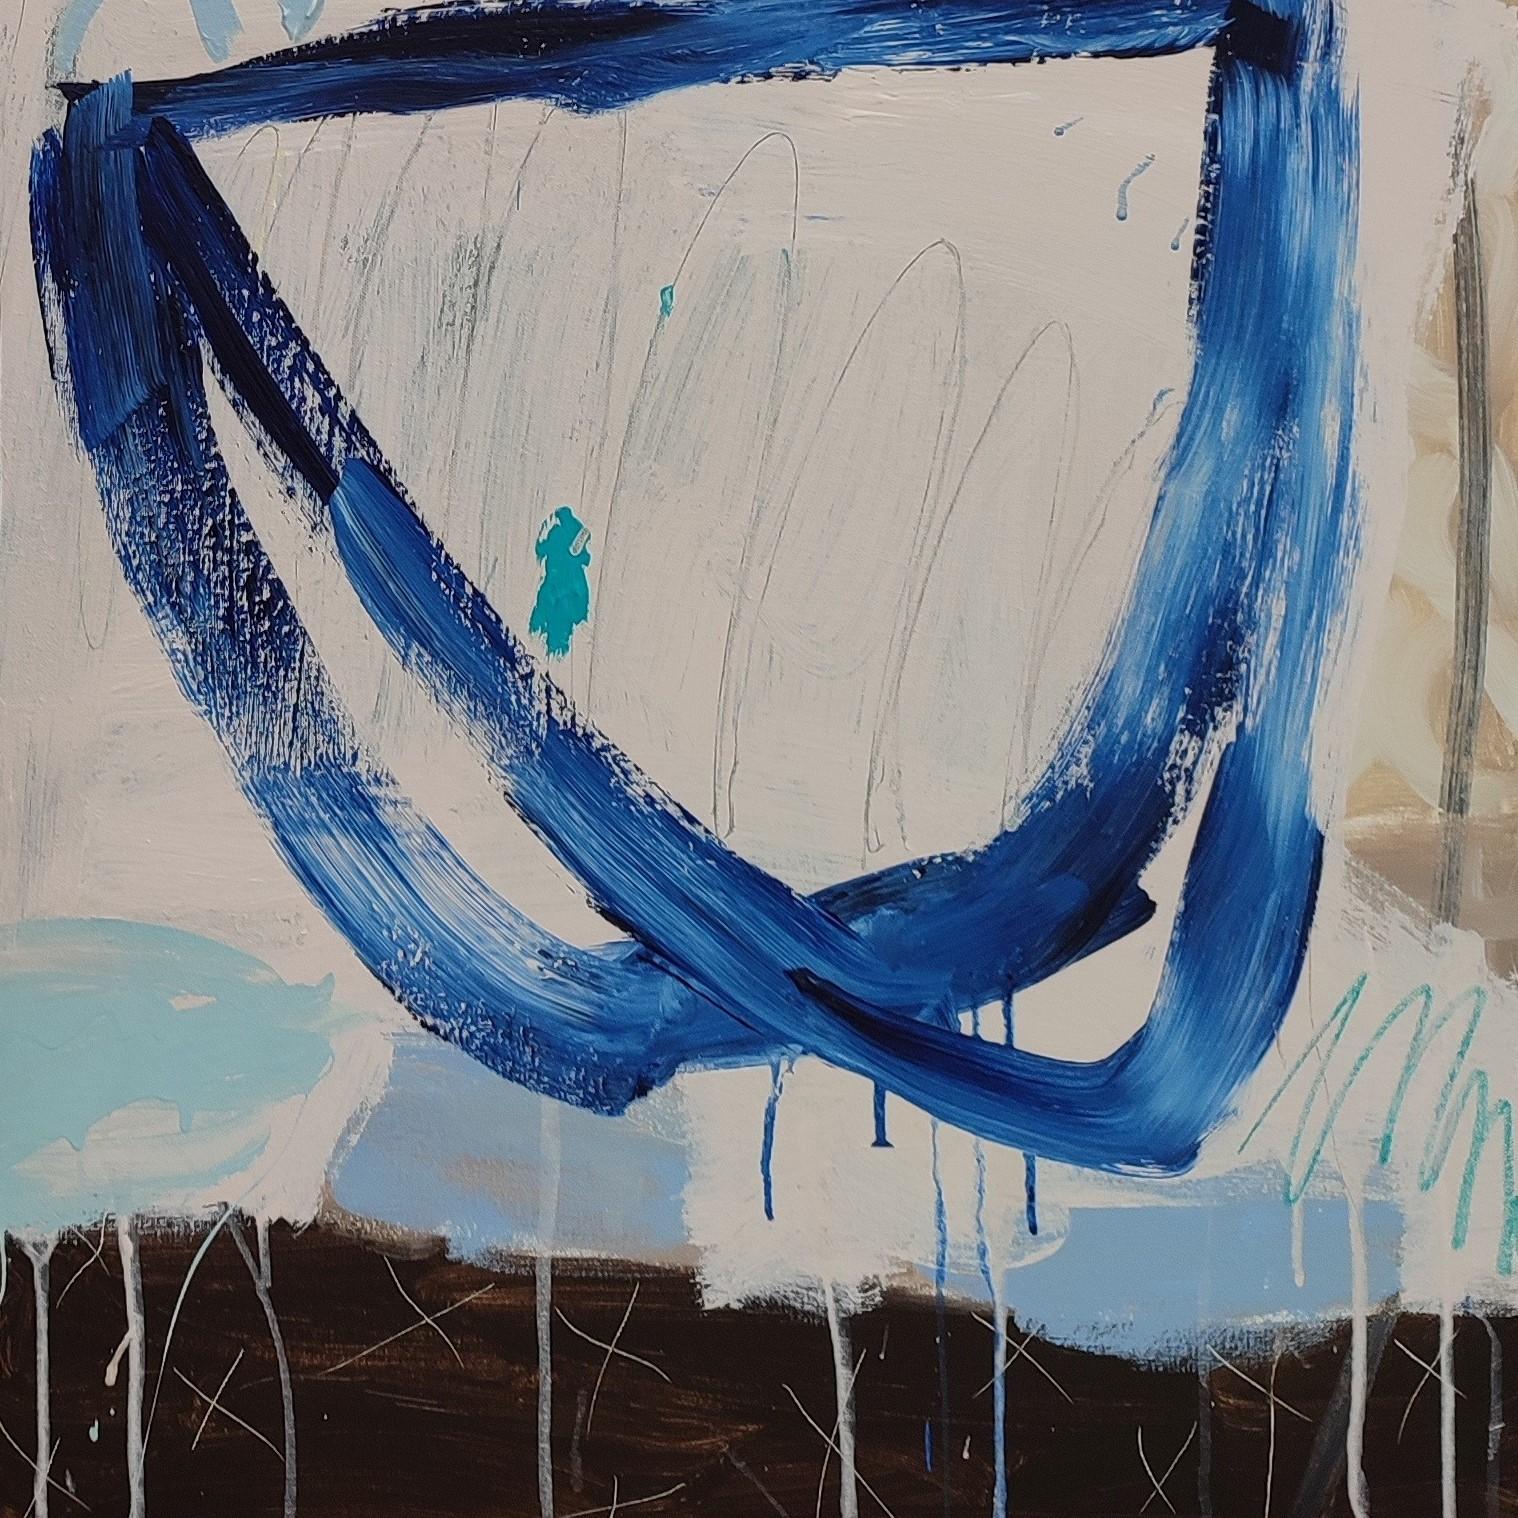 Journey Together ist ein originales abstraktes expressionistisches Gemälde von Diane Whalley mit mehreren Farbschichten auf Leinwand, die über mehrere Tage hinweg mit markierenden Details aufgebaut wurden. Reisen macht viel mehr Spaß, wenn man zu